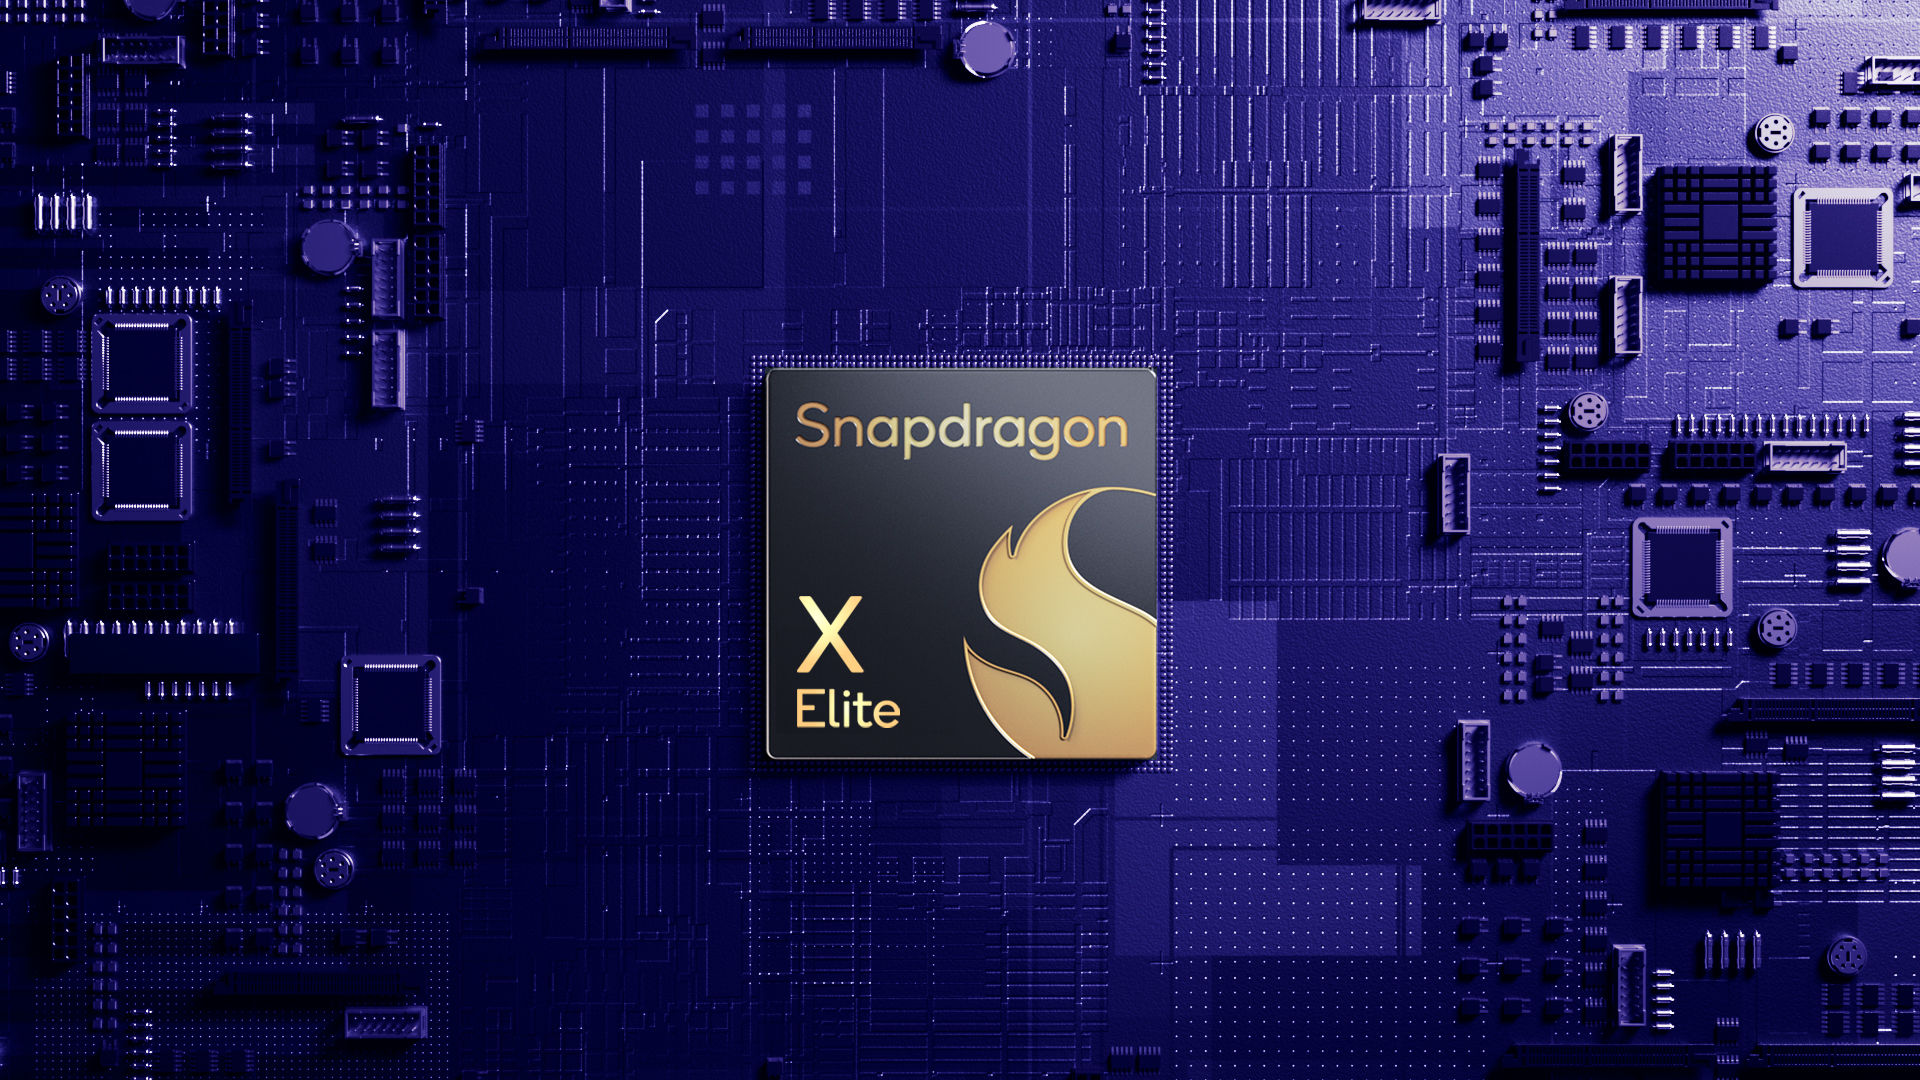 Lo Snapdragon X Elite è molte volte più produttivo dell'Apple M2 nel test multi-core, ma è inferiore ad esso nel test single-core